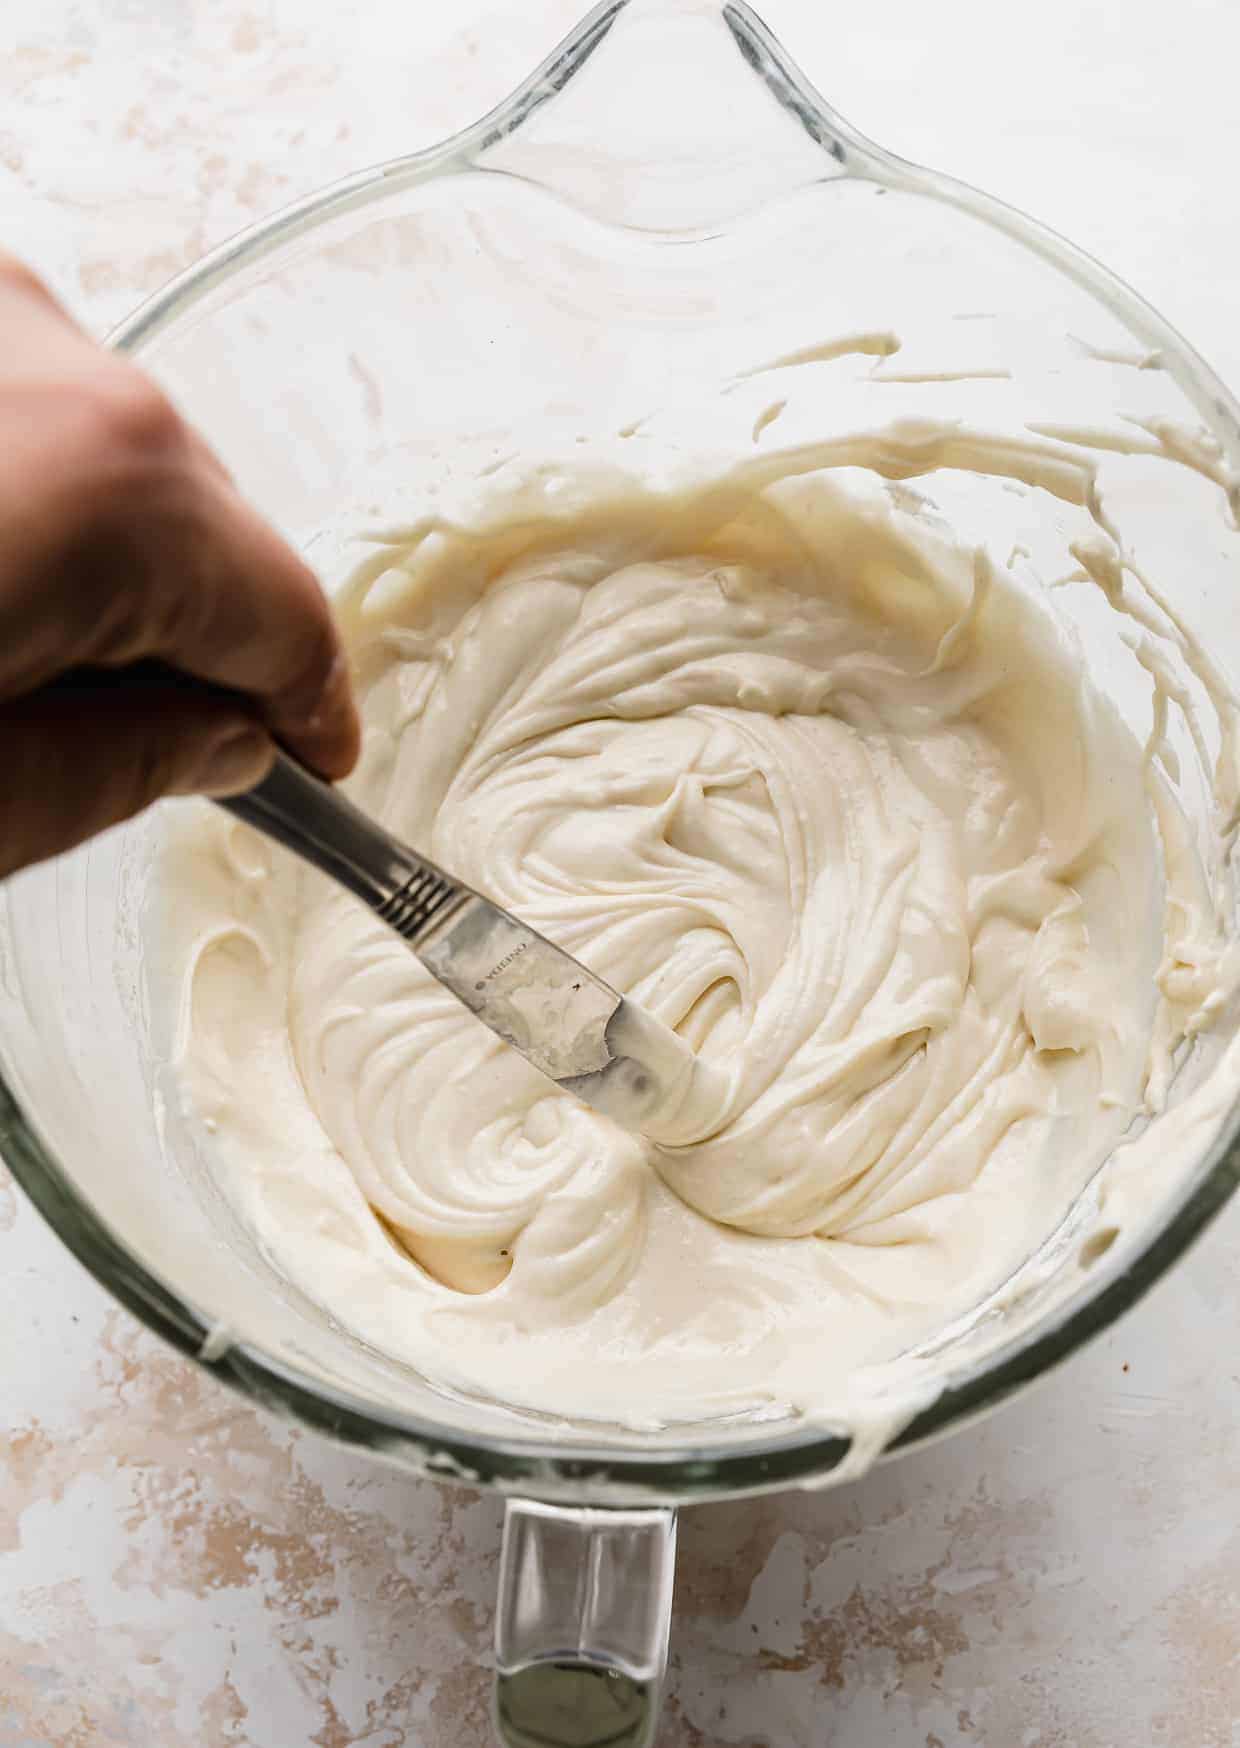 A butter knife running through a bowl full of vanilla cake batter.